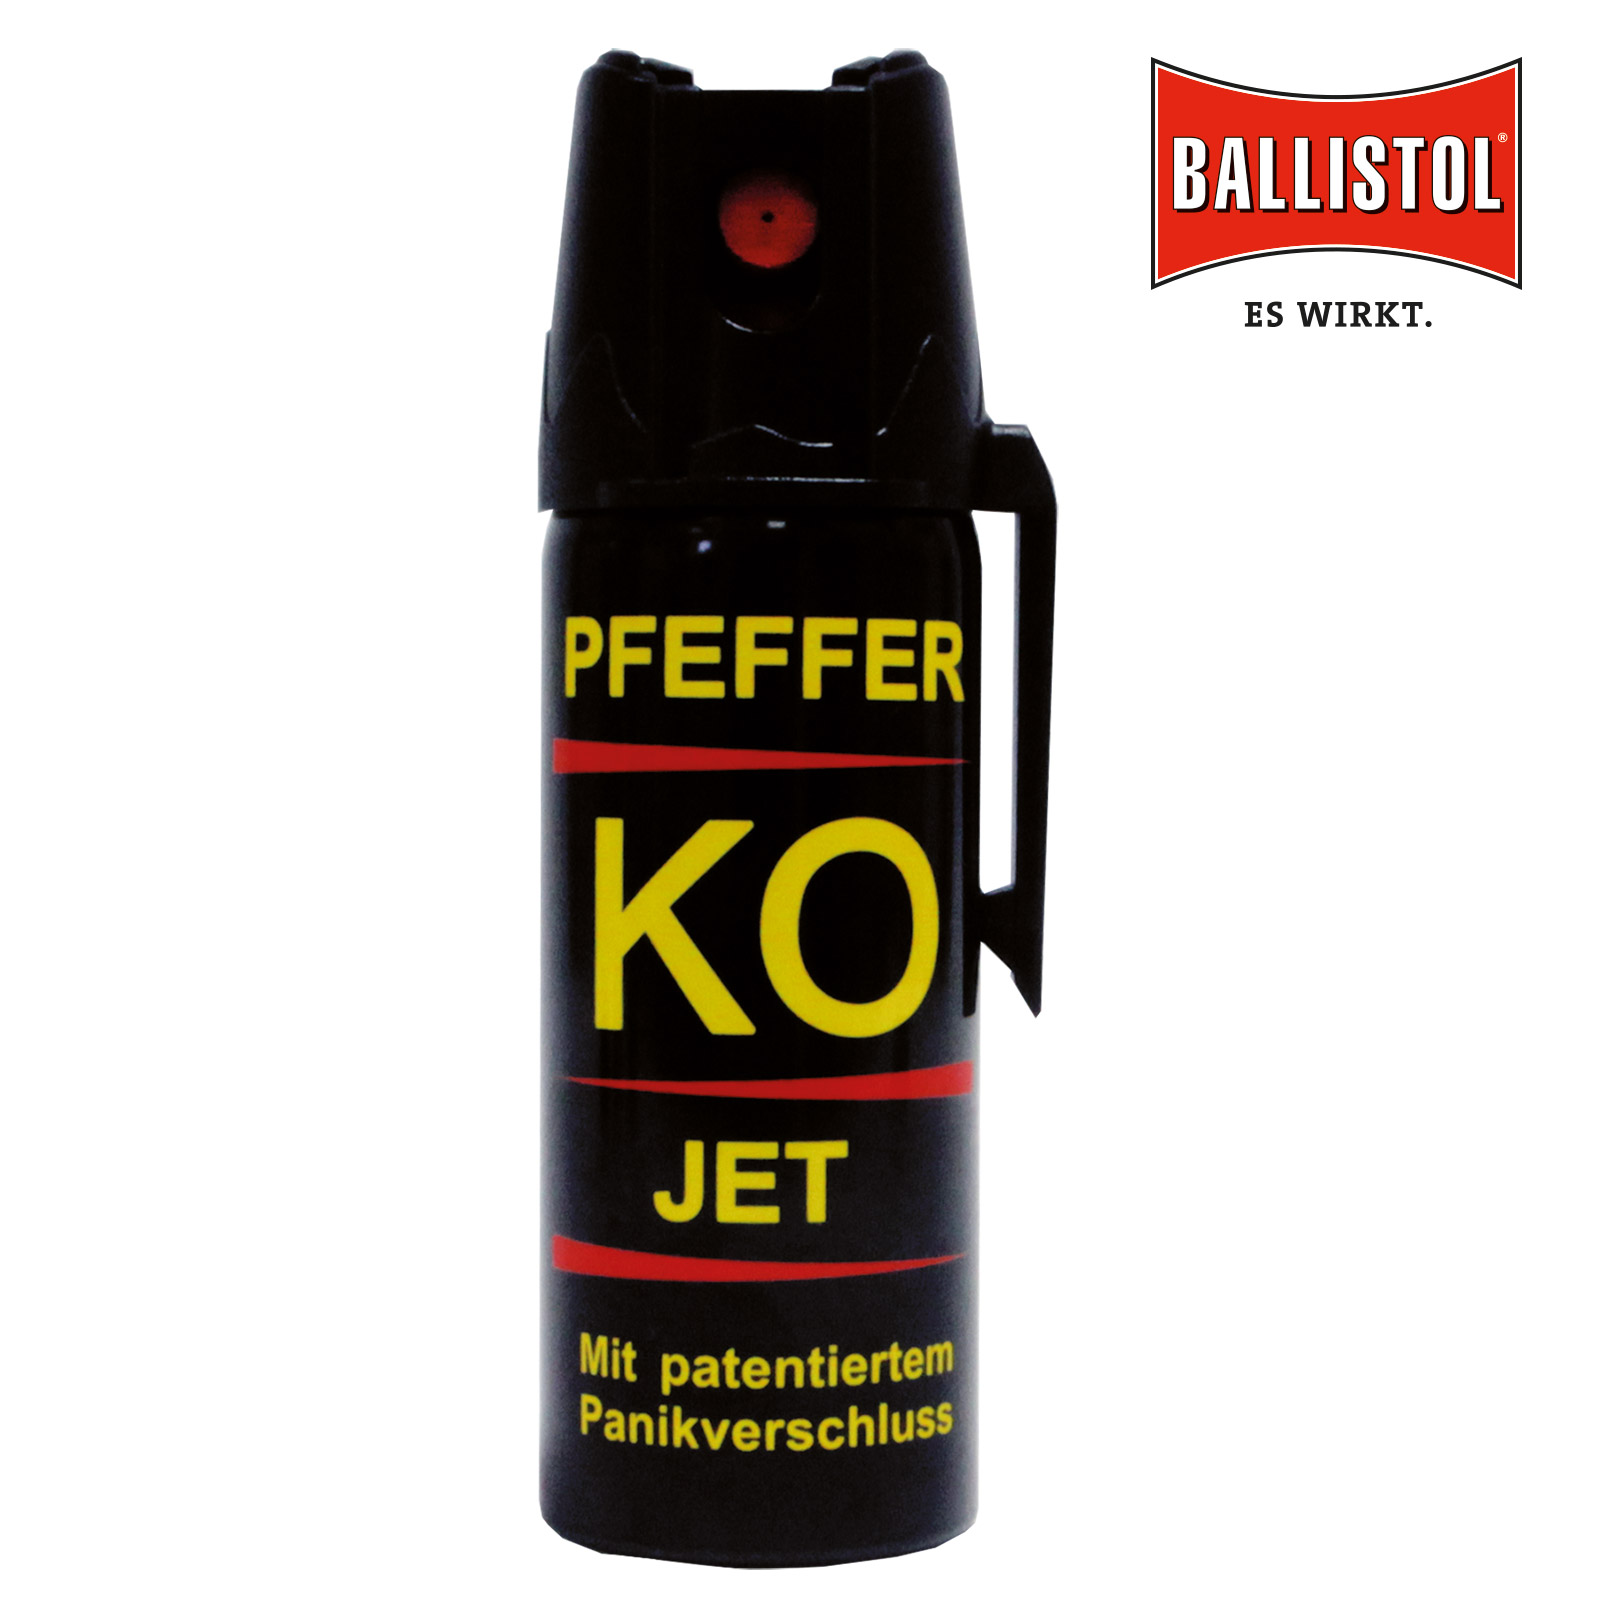 Ballistol Spray en poivre KO, 50ml (jet fin) :: Spray de défense + menottes  :: Armes :: Gruenig + Elmiger